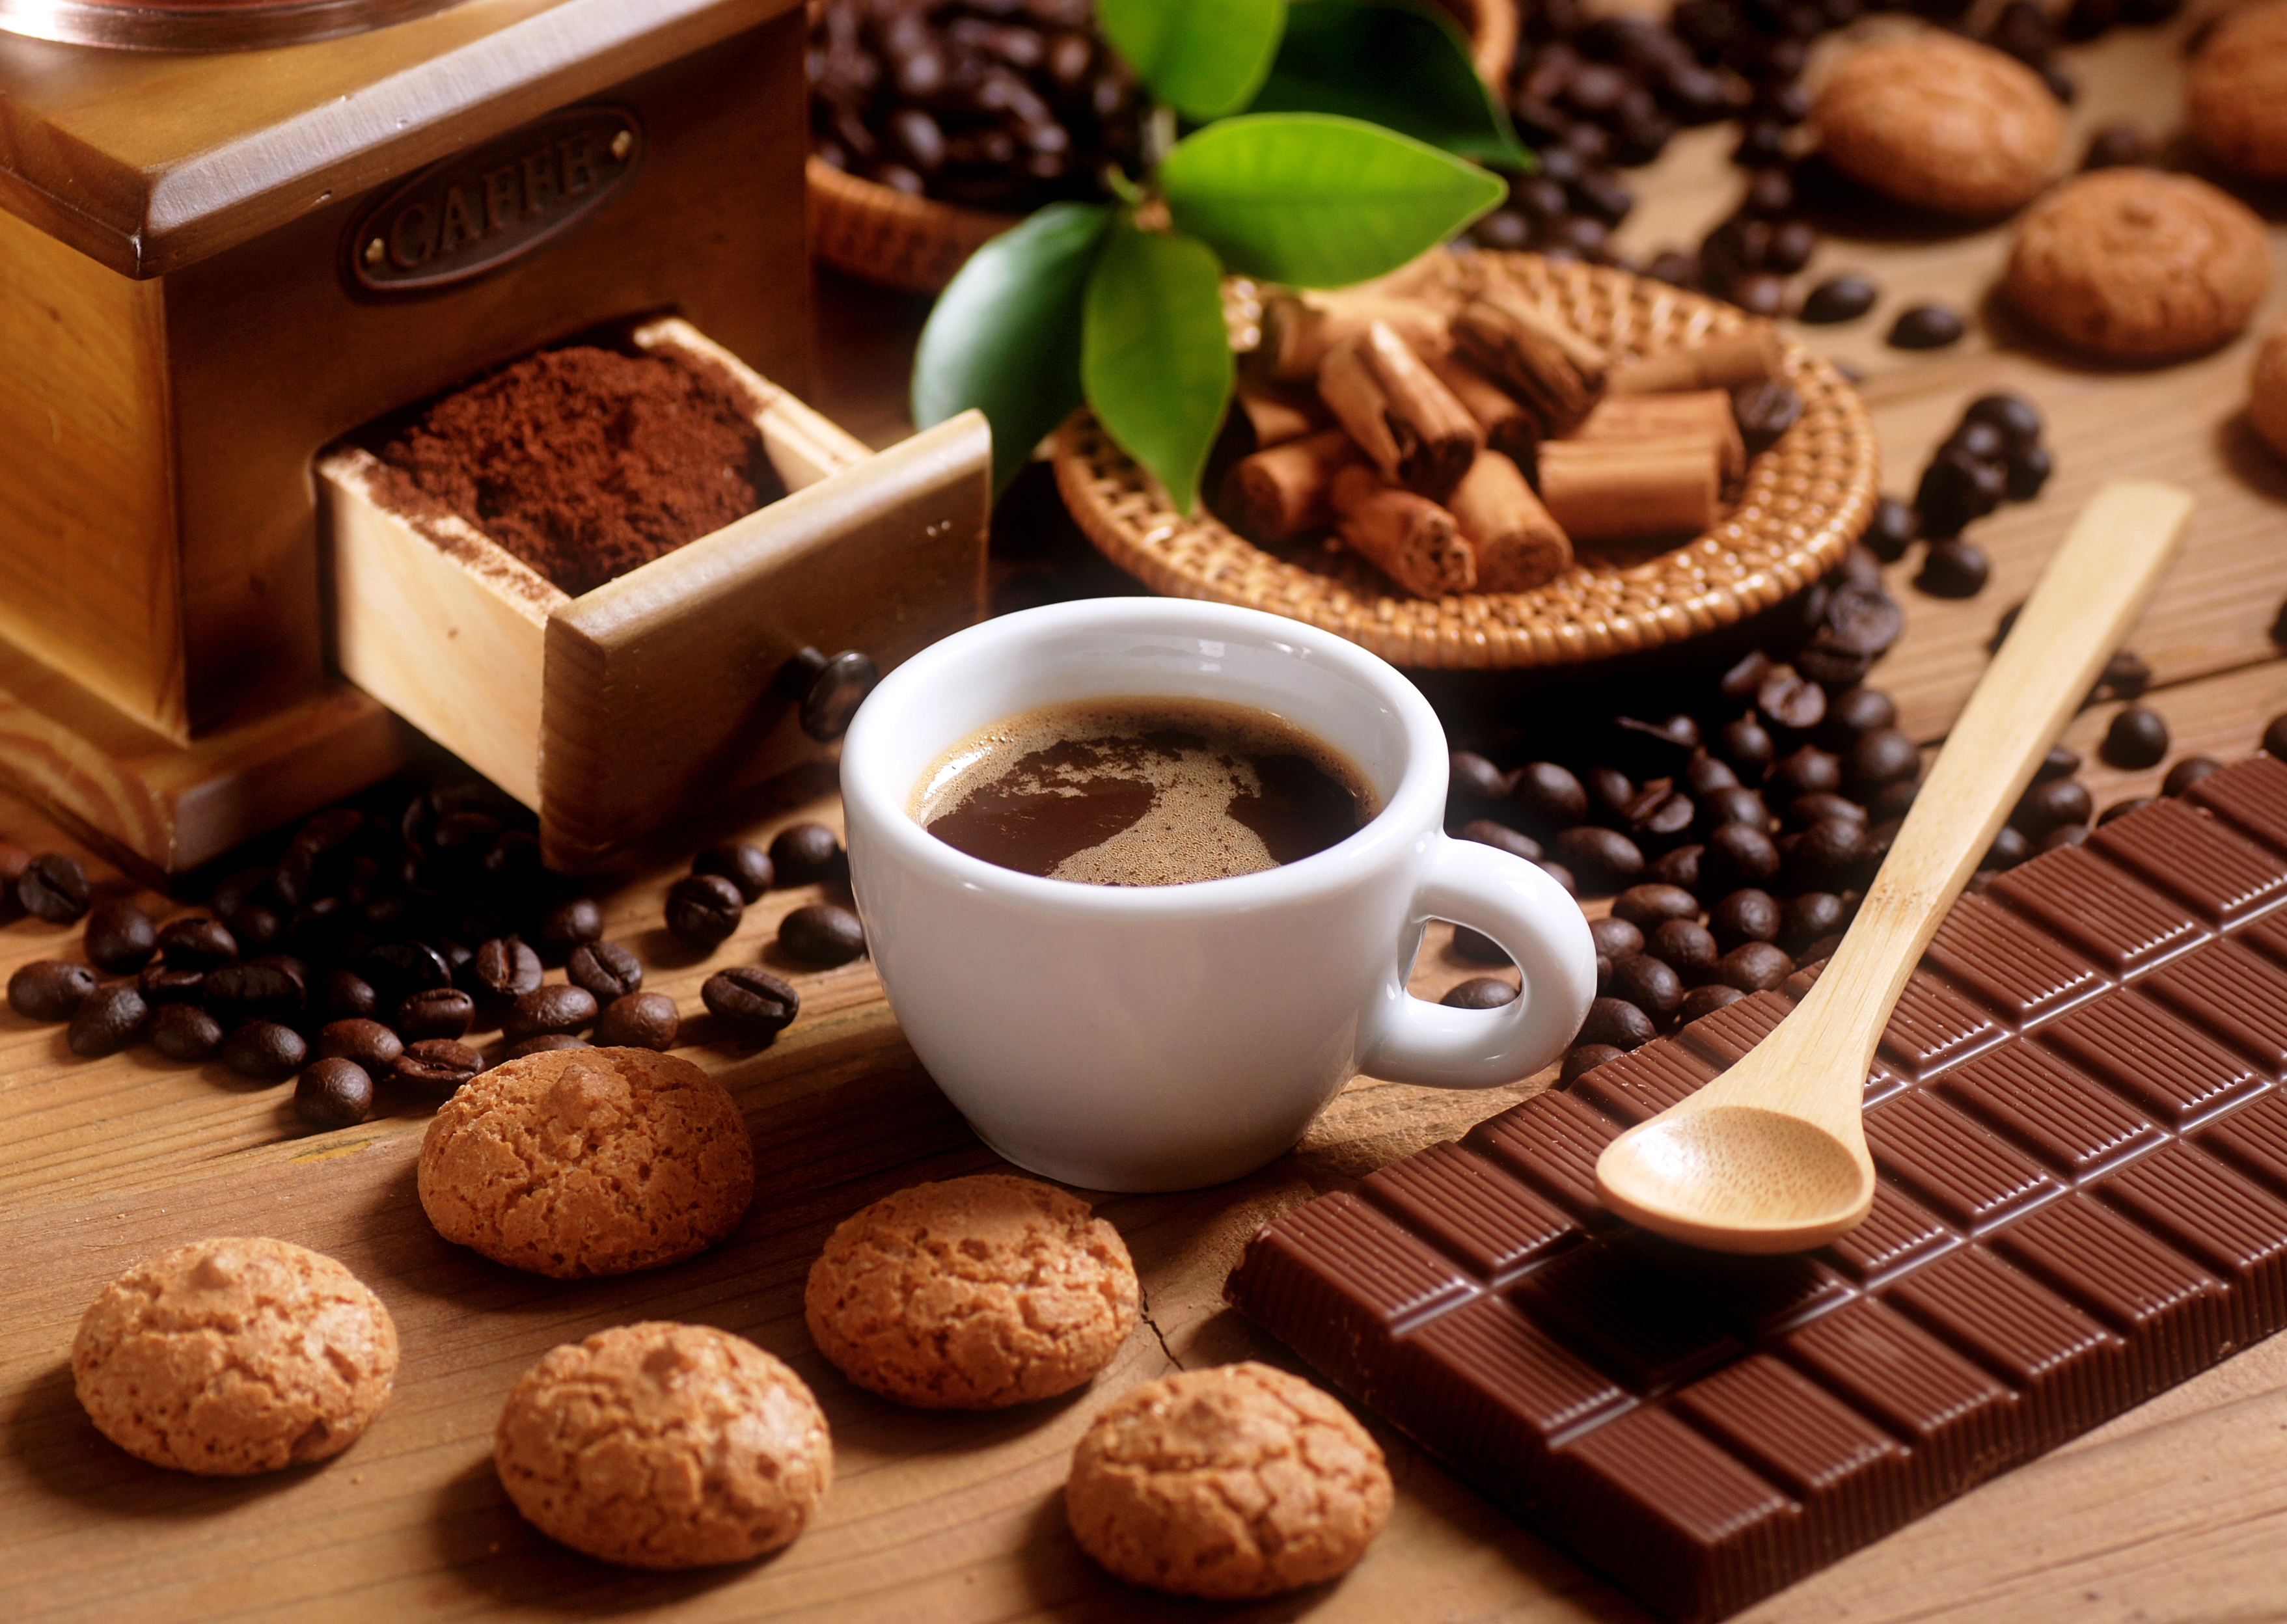 Coffee i chocolate. Красивый кофе. Кофе и шоколад. Заставка на рабочий стол кофе. Кофе с конфетами.